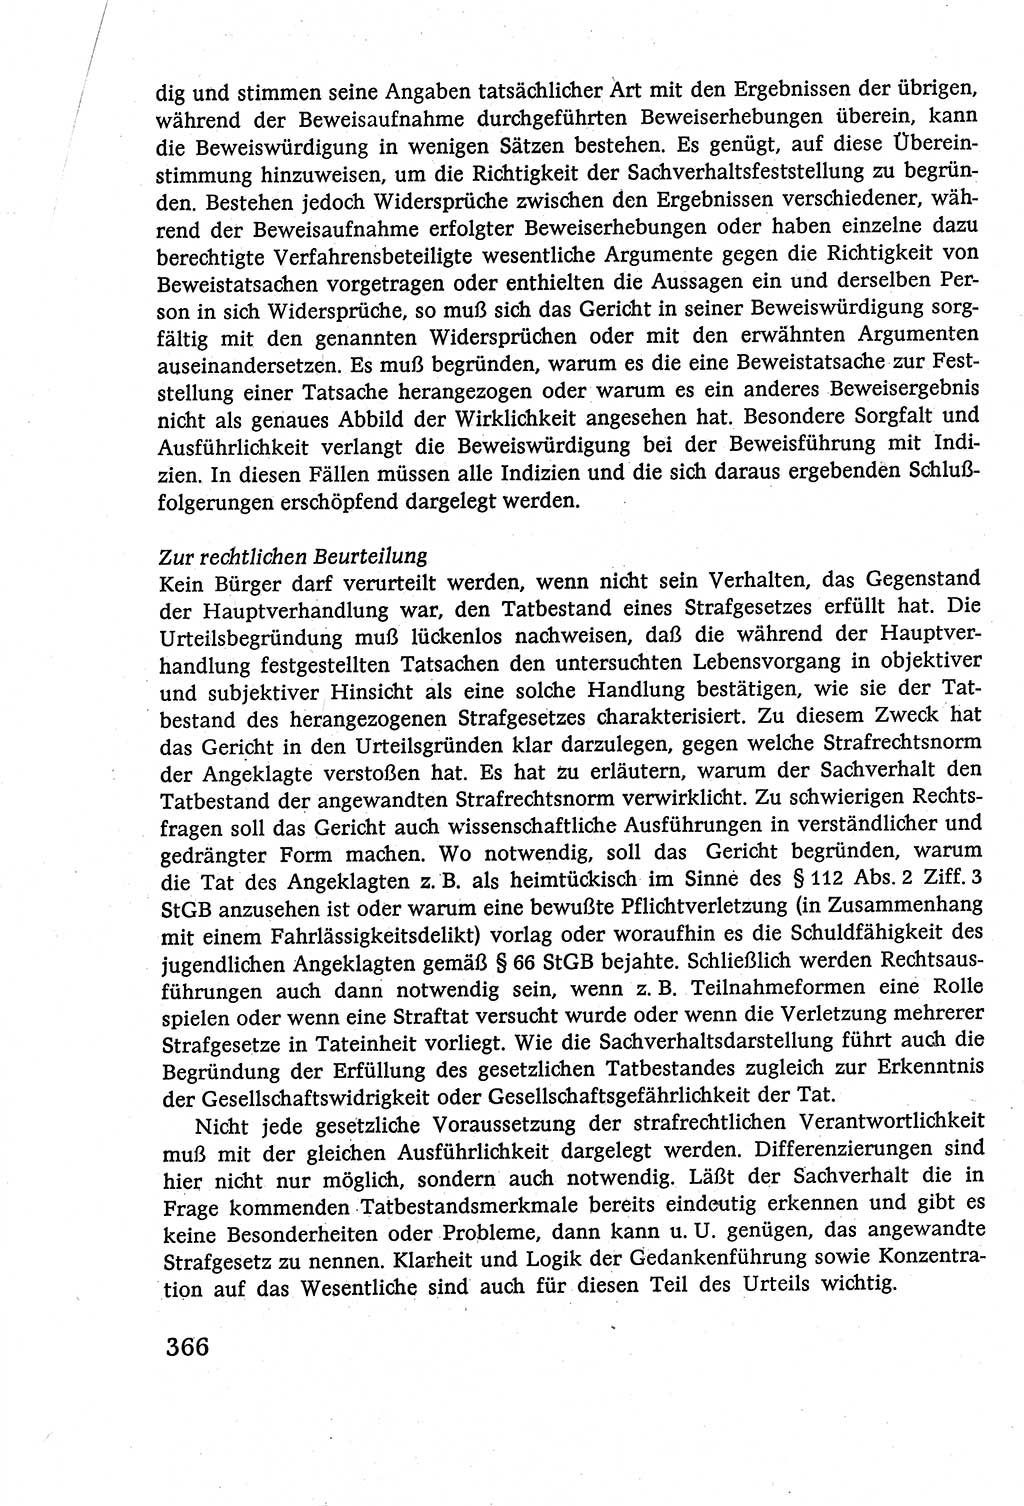 Strafverfahrensrecht [Deutsche Demokratische Republik (DDR)], Lehrbuch 1977, Seite 366 (Strafverf.-R. DDR Lb. 1977, S. 366)